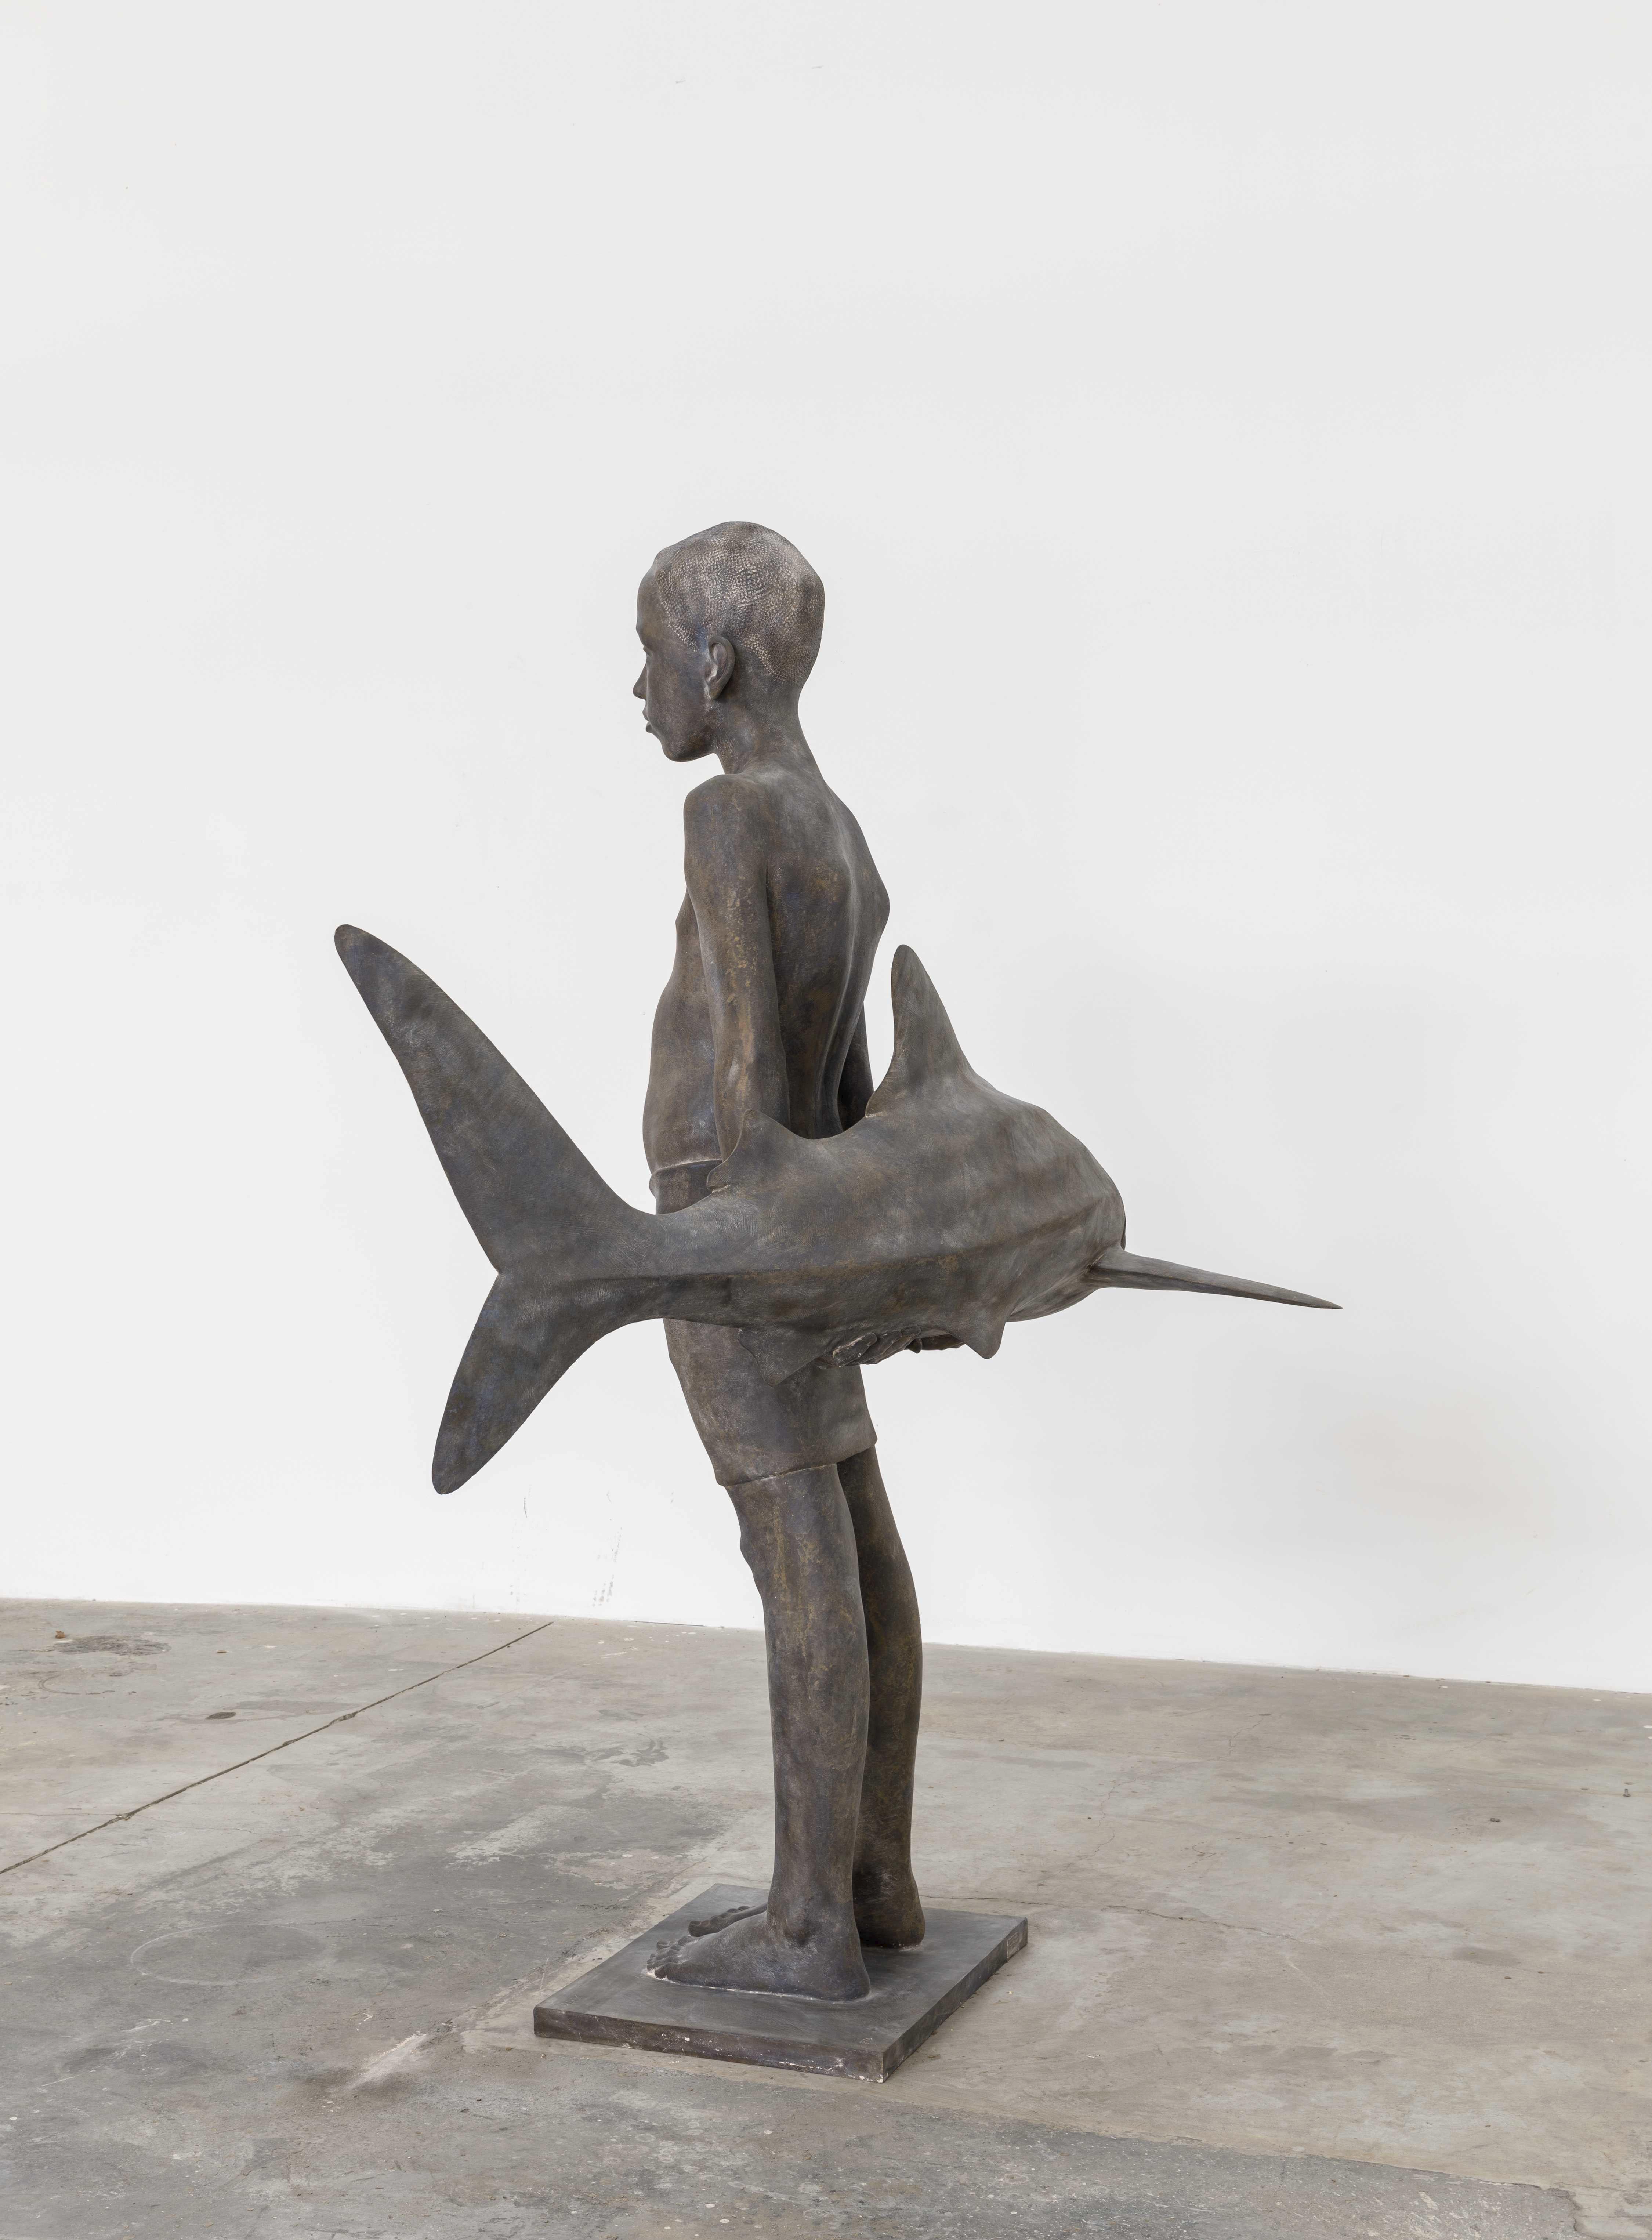 Eines der bekanntesten Werke des Künstlers, der Junge mit dem Hai, ist in der größten Version zu sehen.
Ausgestellt bei Master Piece London im Jahr 2022, außerdem eine Skulptur in der Bond Street in London (siehe Bilder)
